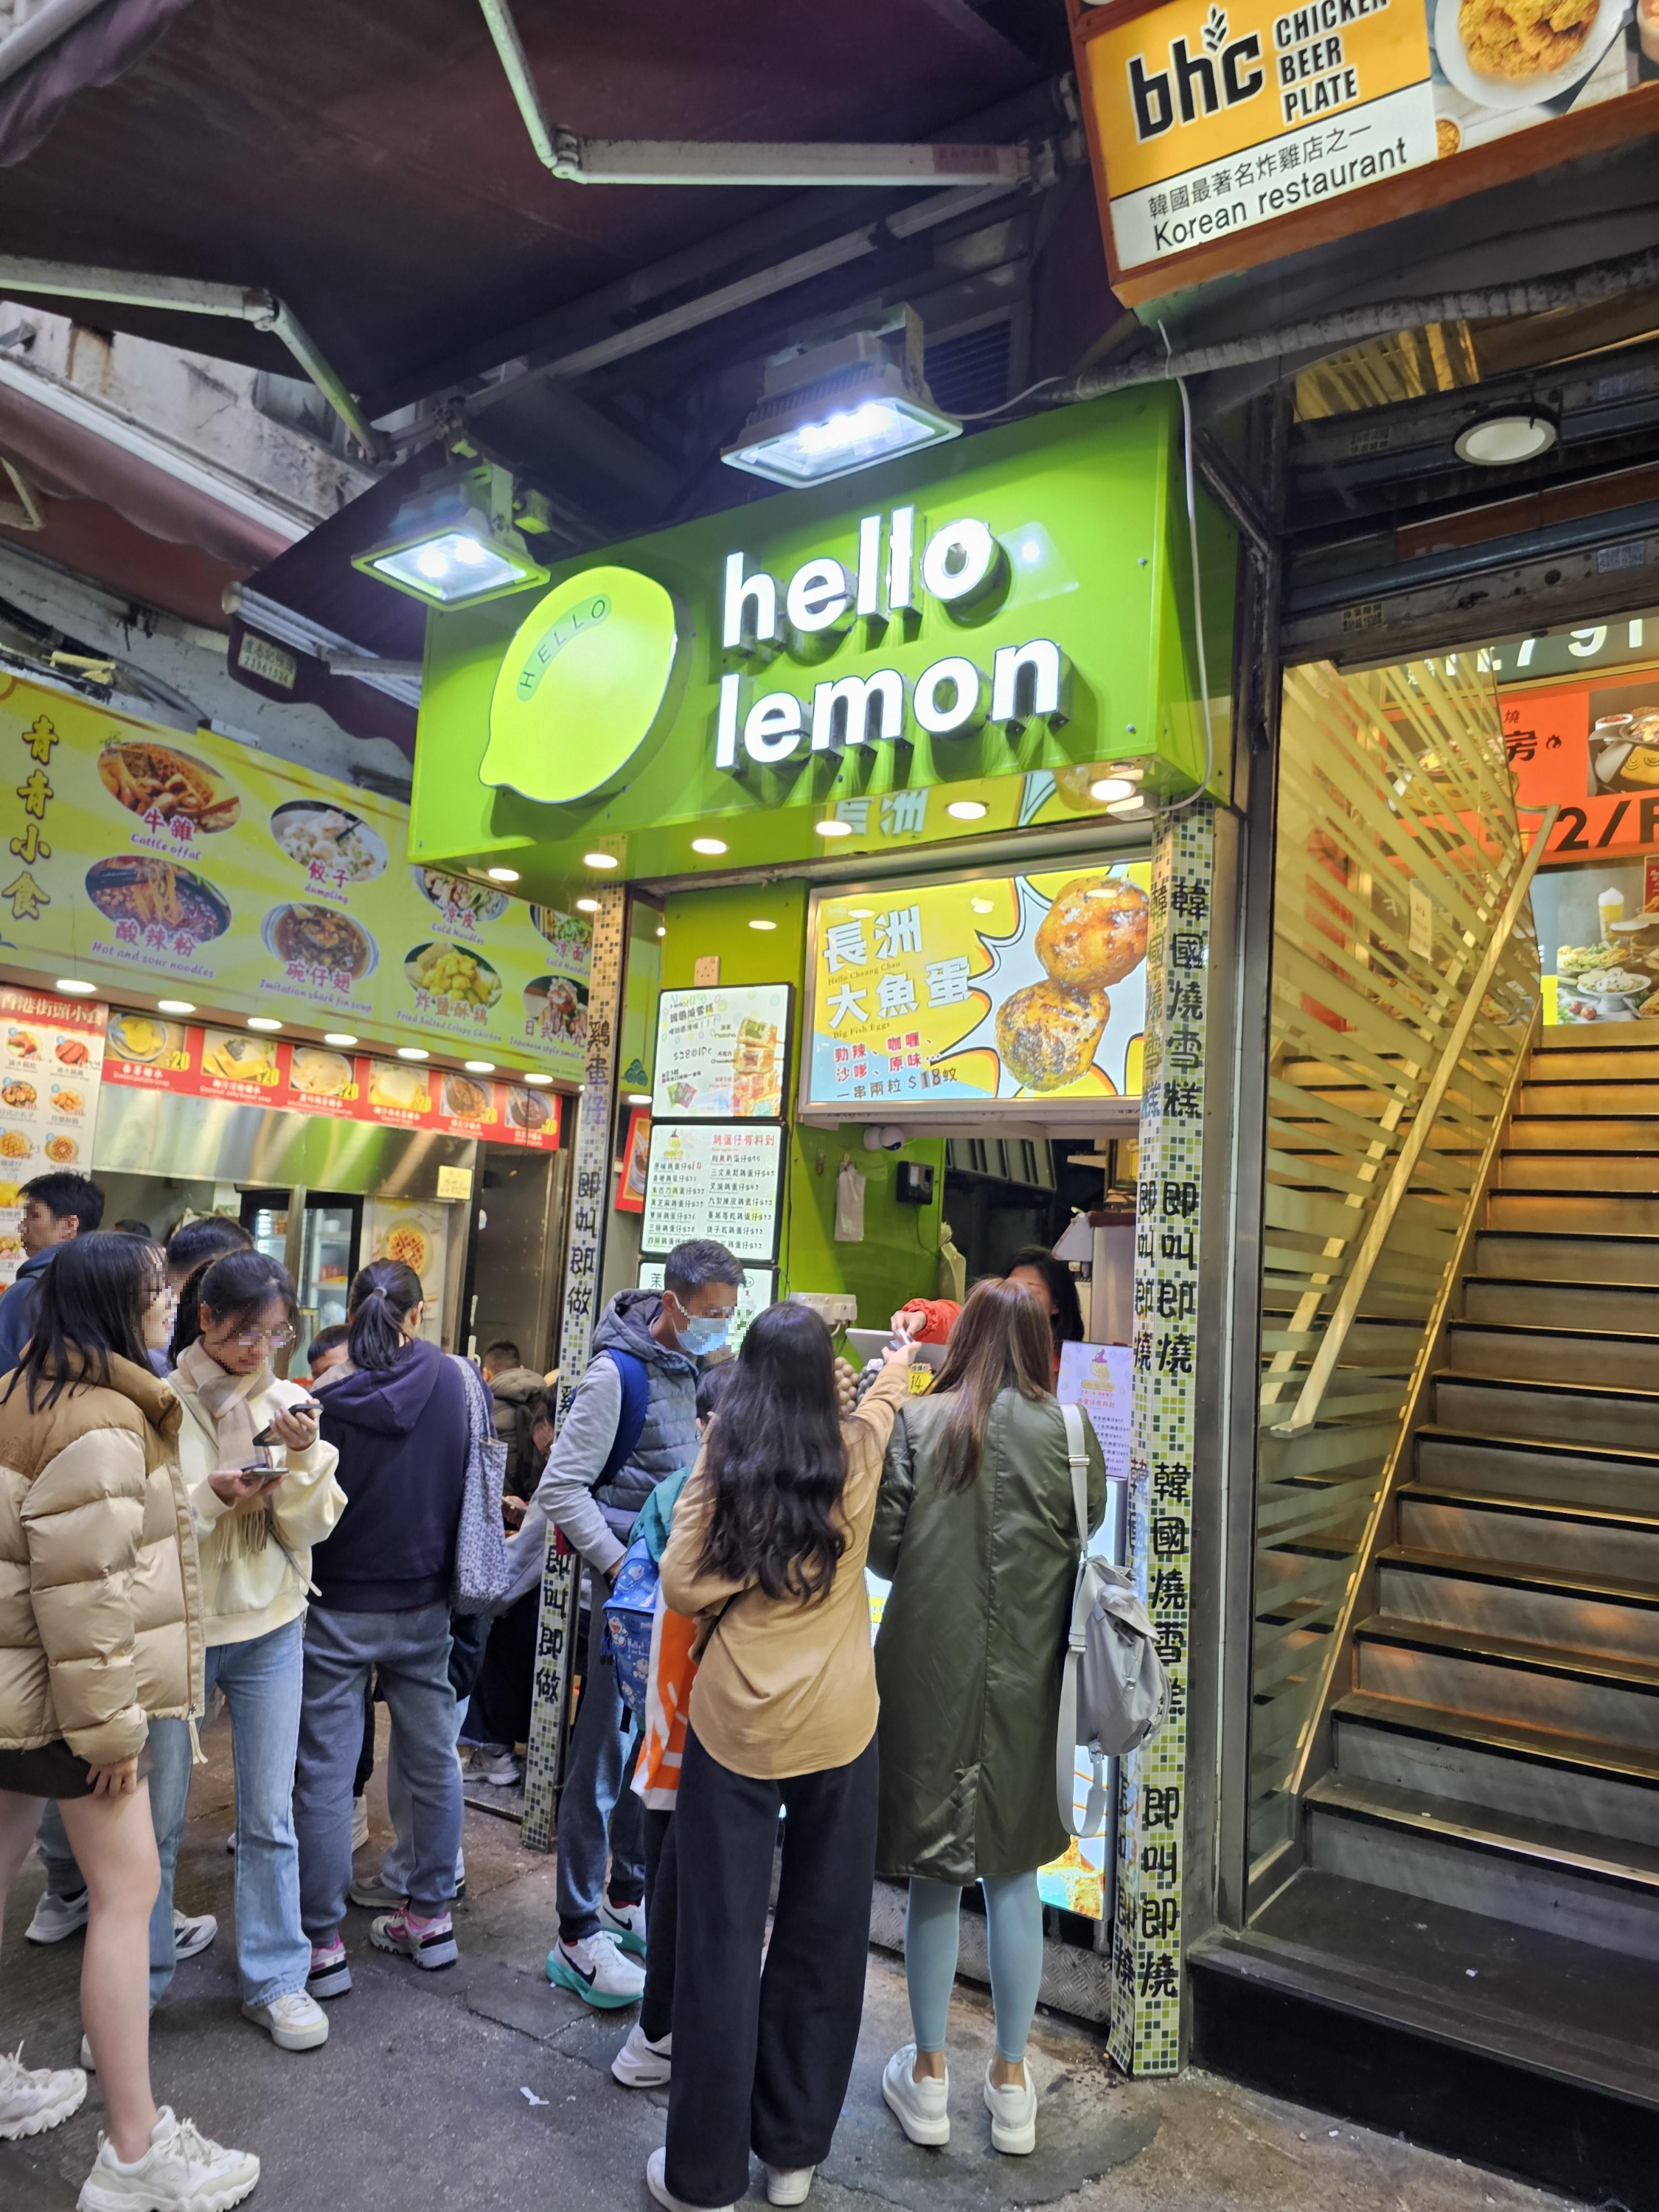 홍콩 길거리음식(에그와플) - hello lemon 